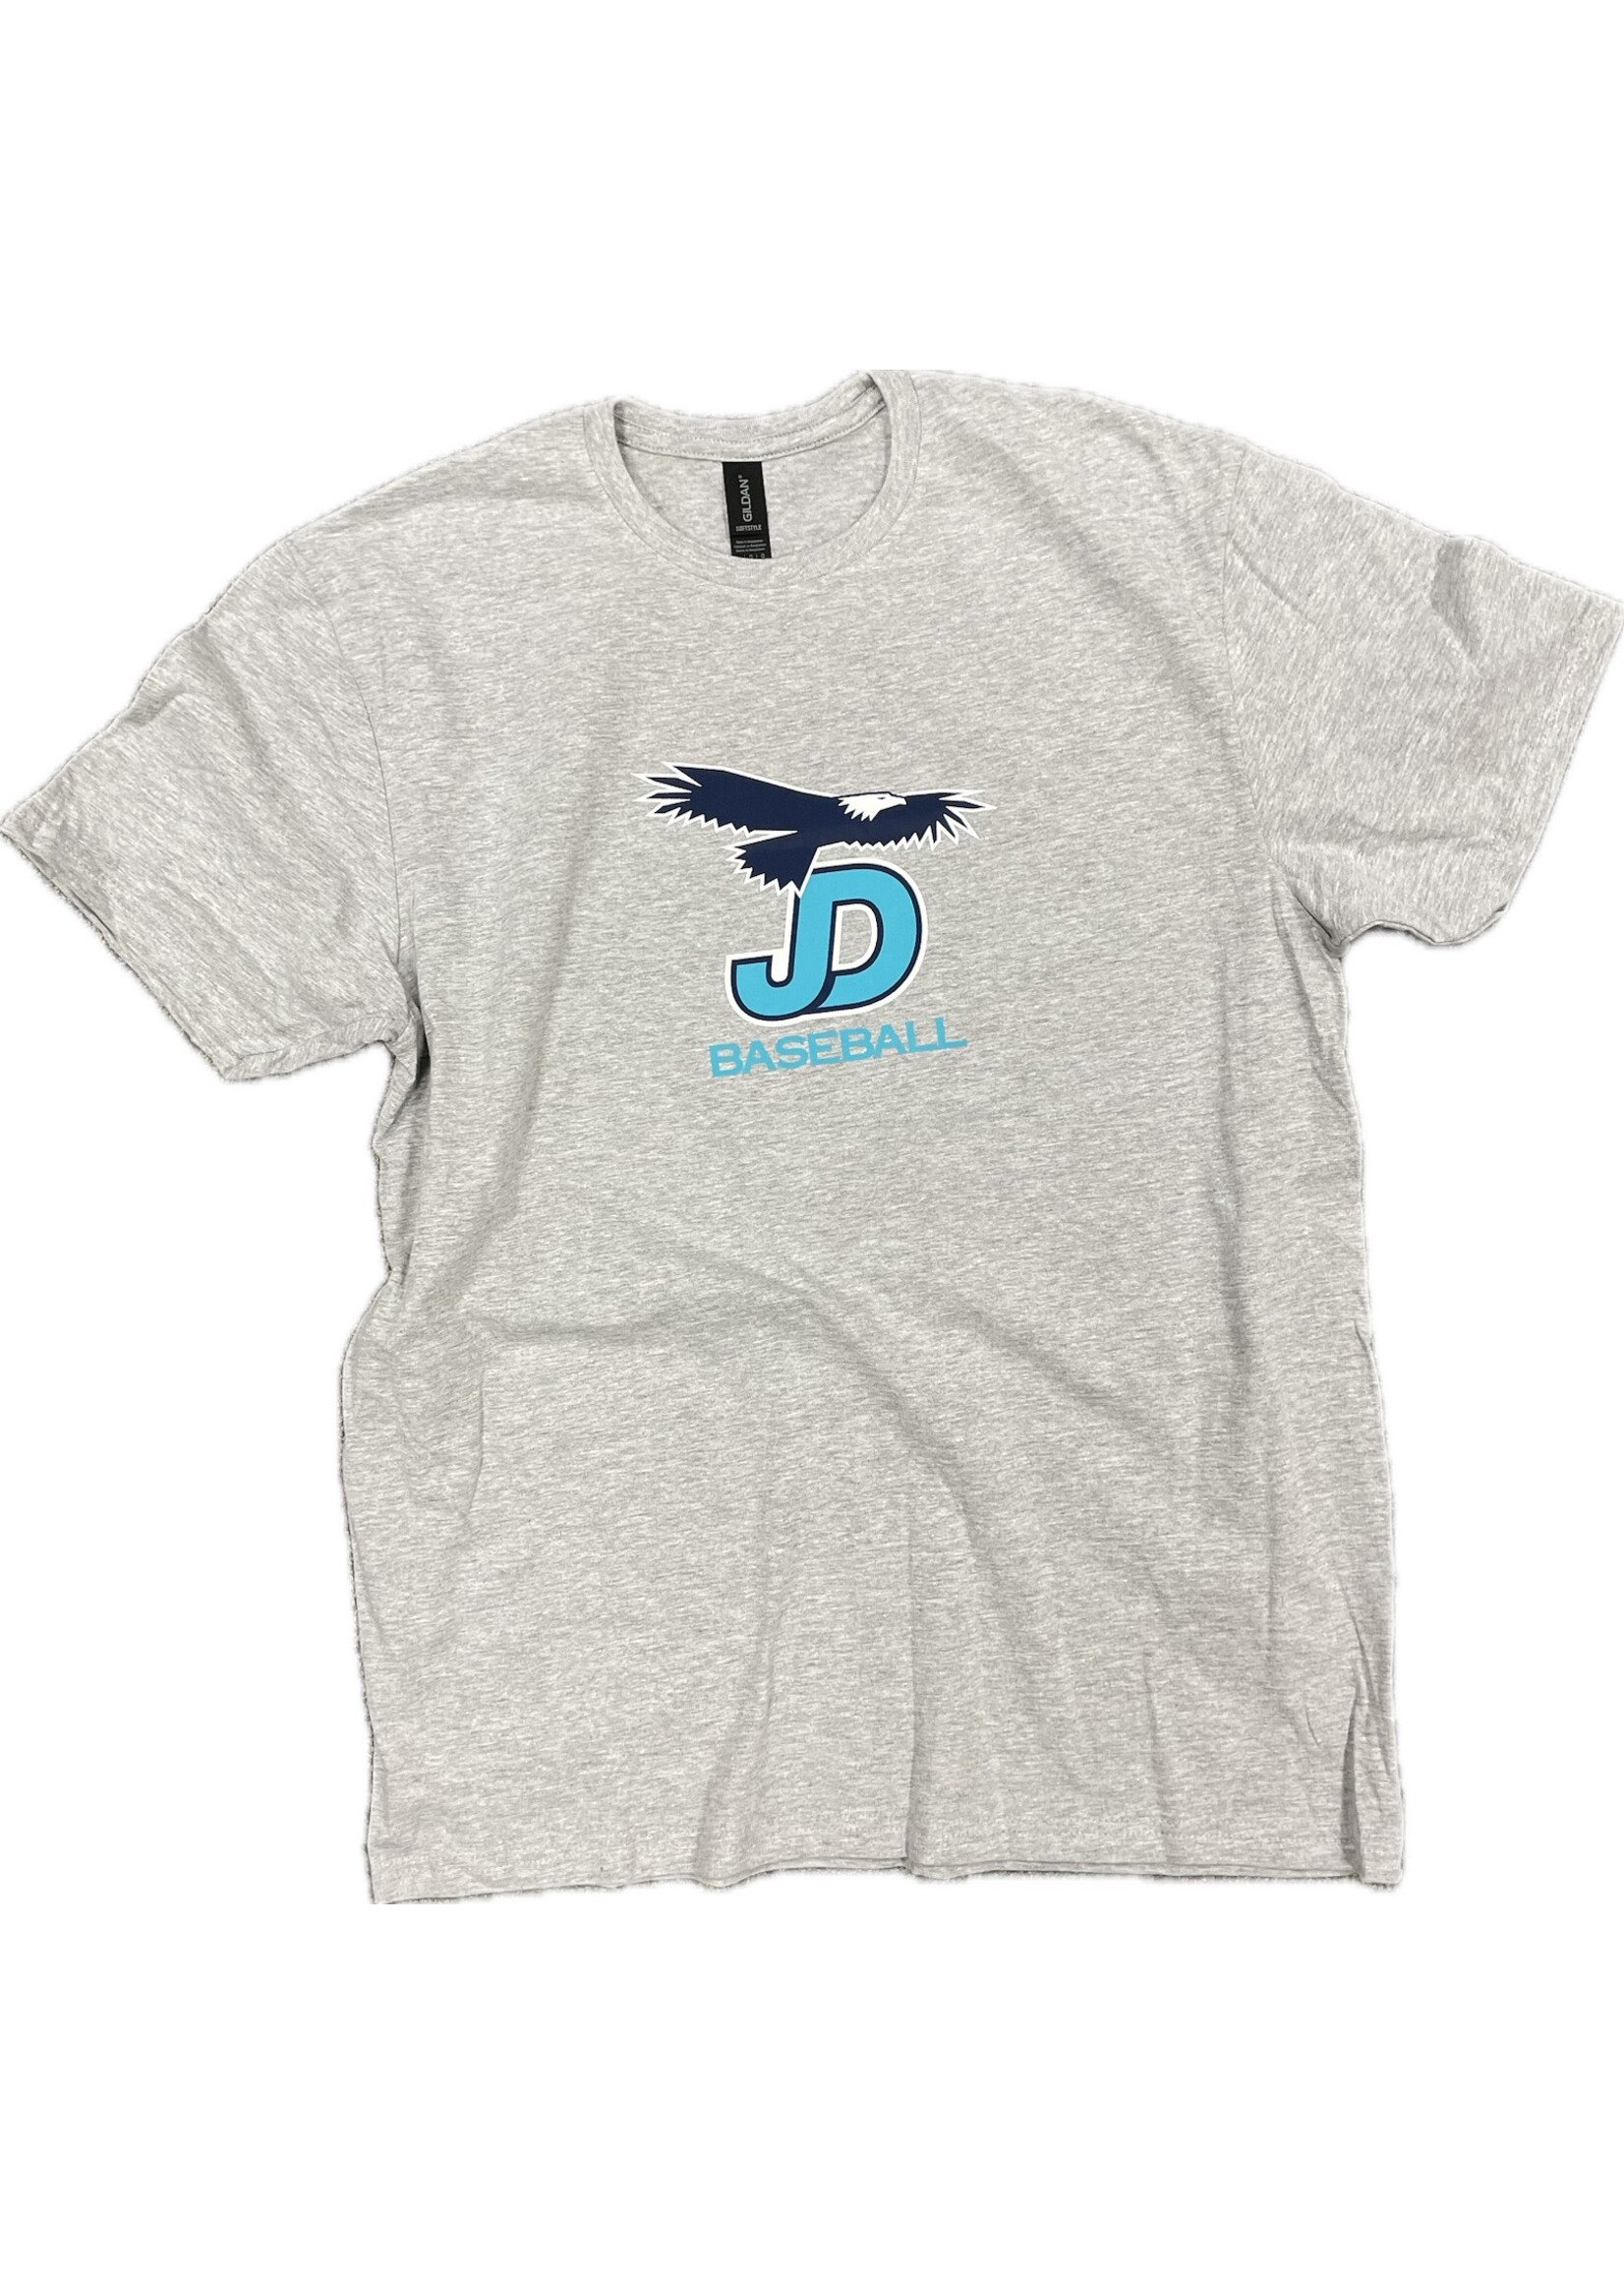 NON-UNIFORM Baseball, JD Eagle Baseball  Unisex S/S Shirt